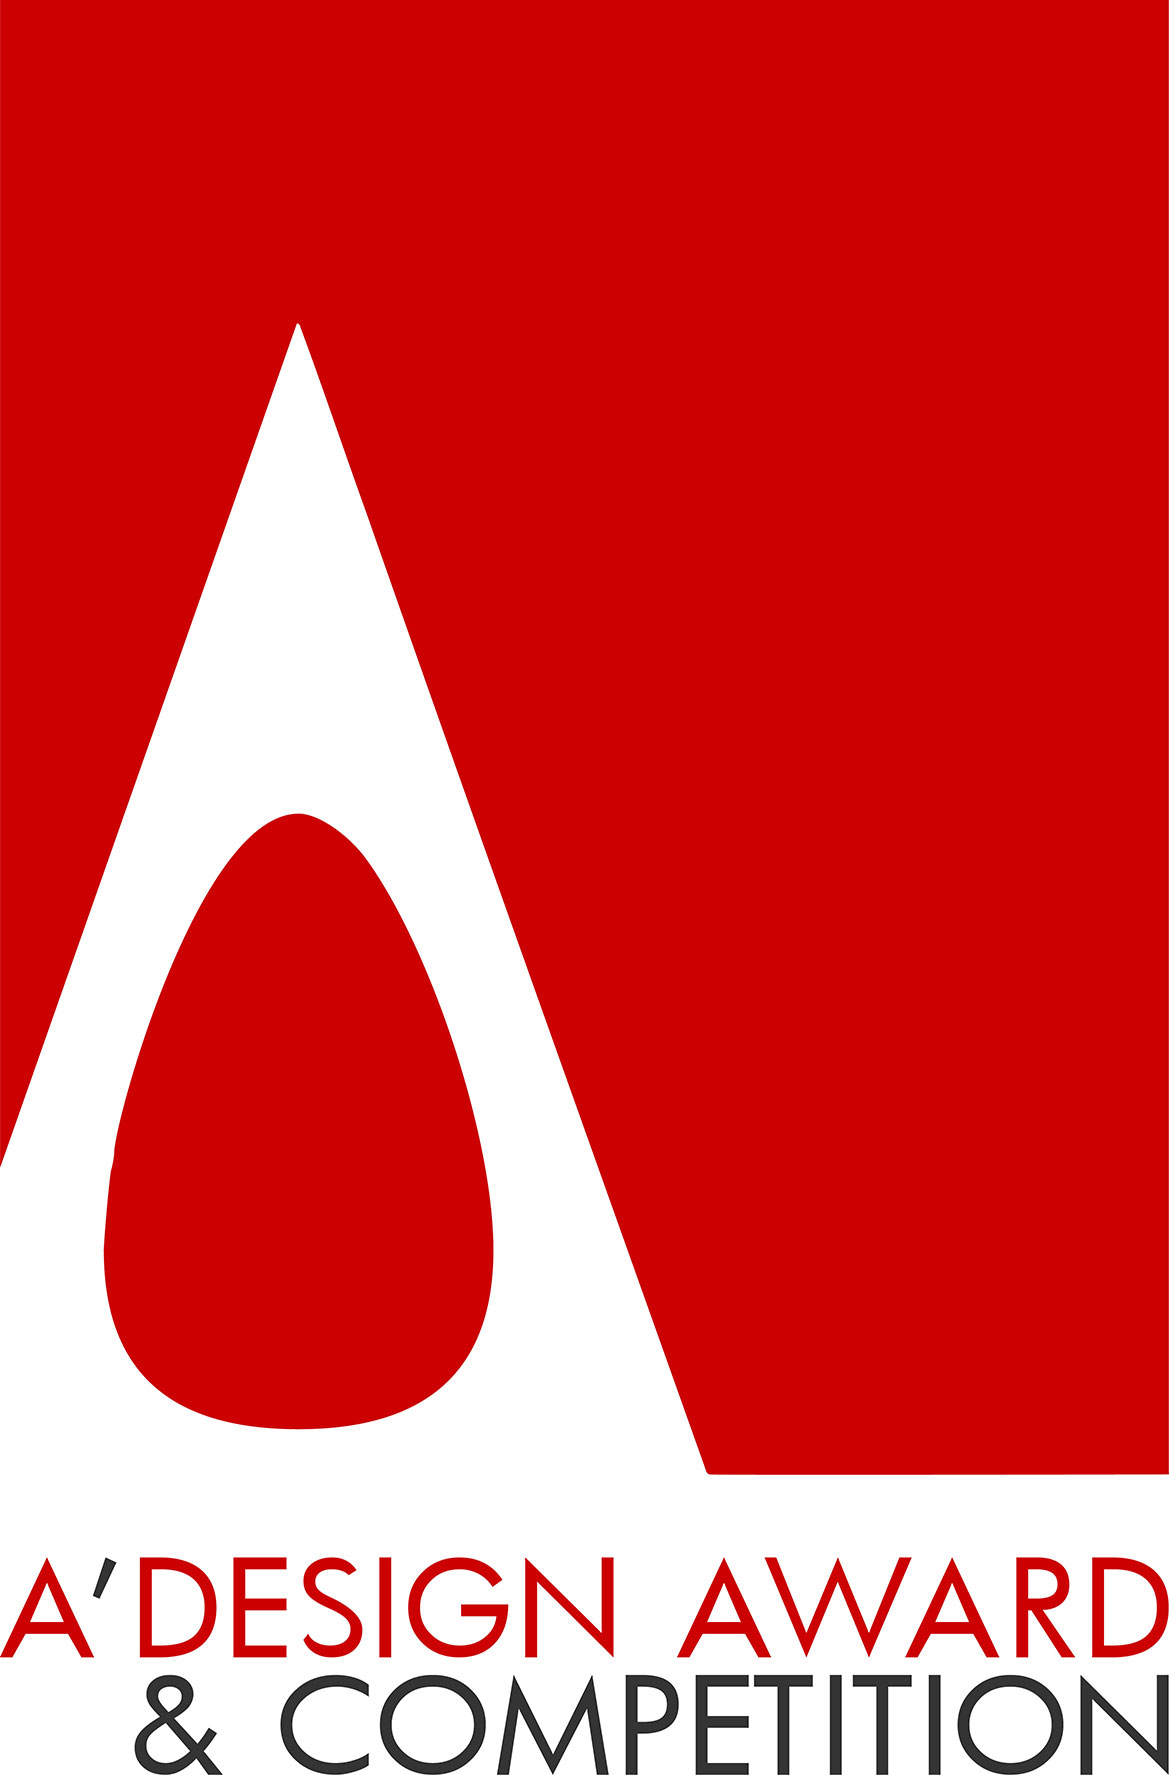 adesign award logo